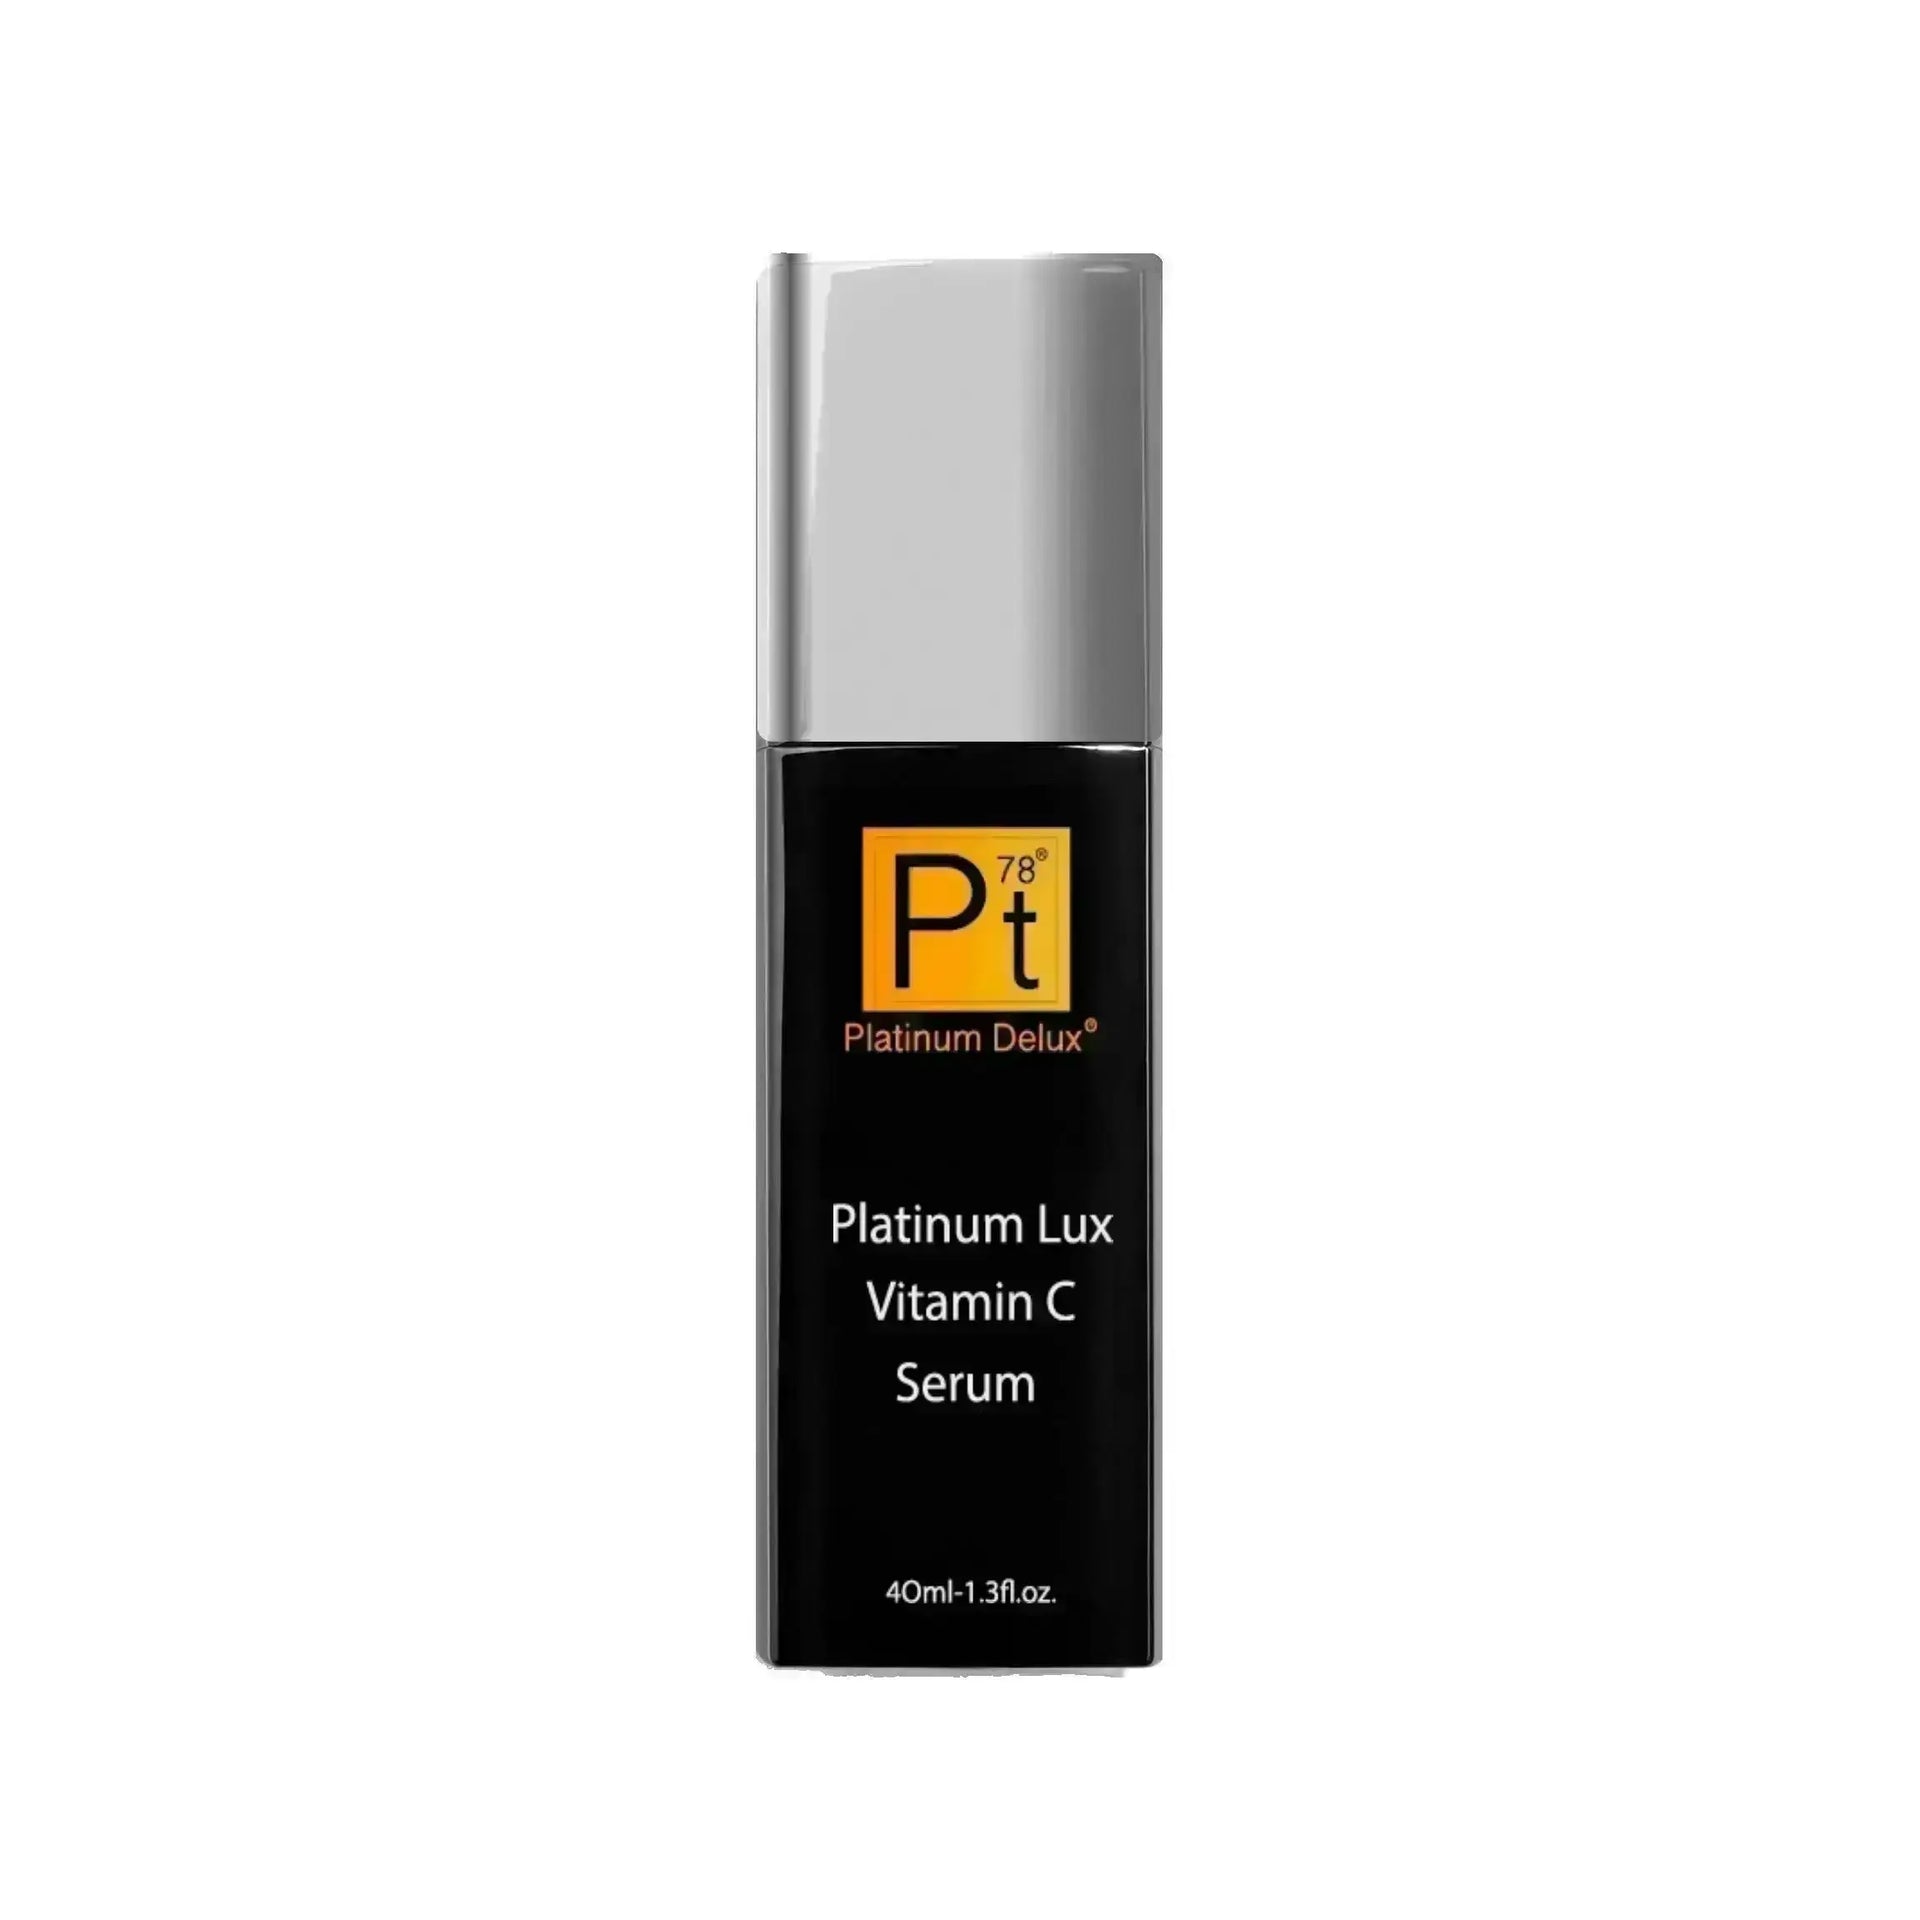 Platinum Lux Vitamin C Serum - Platinum Deluxe Cosmetics